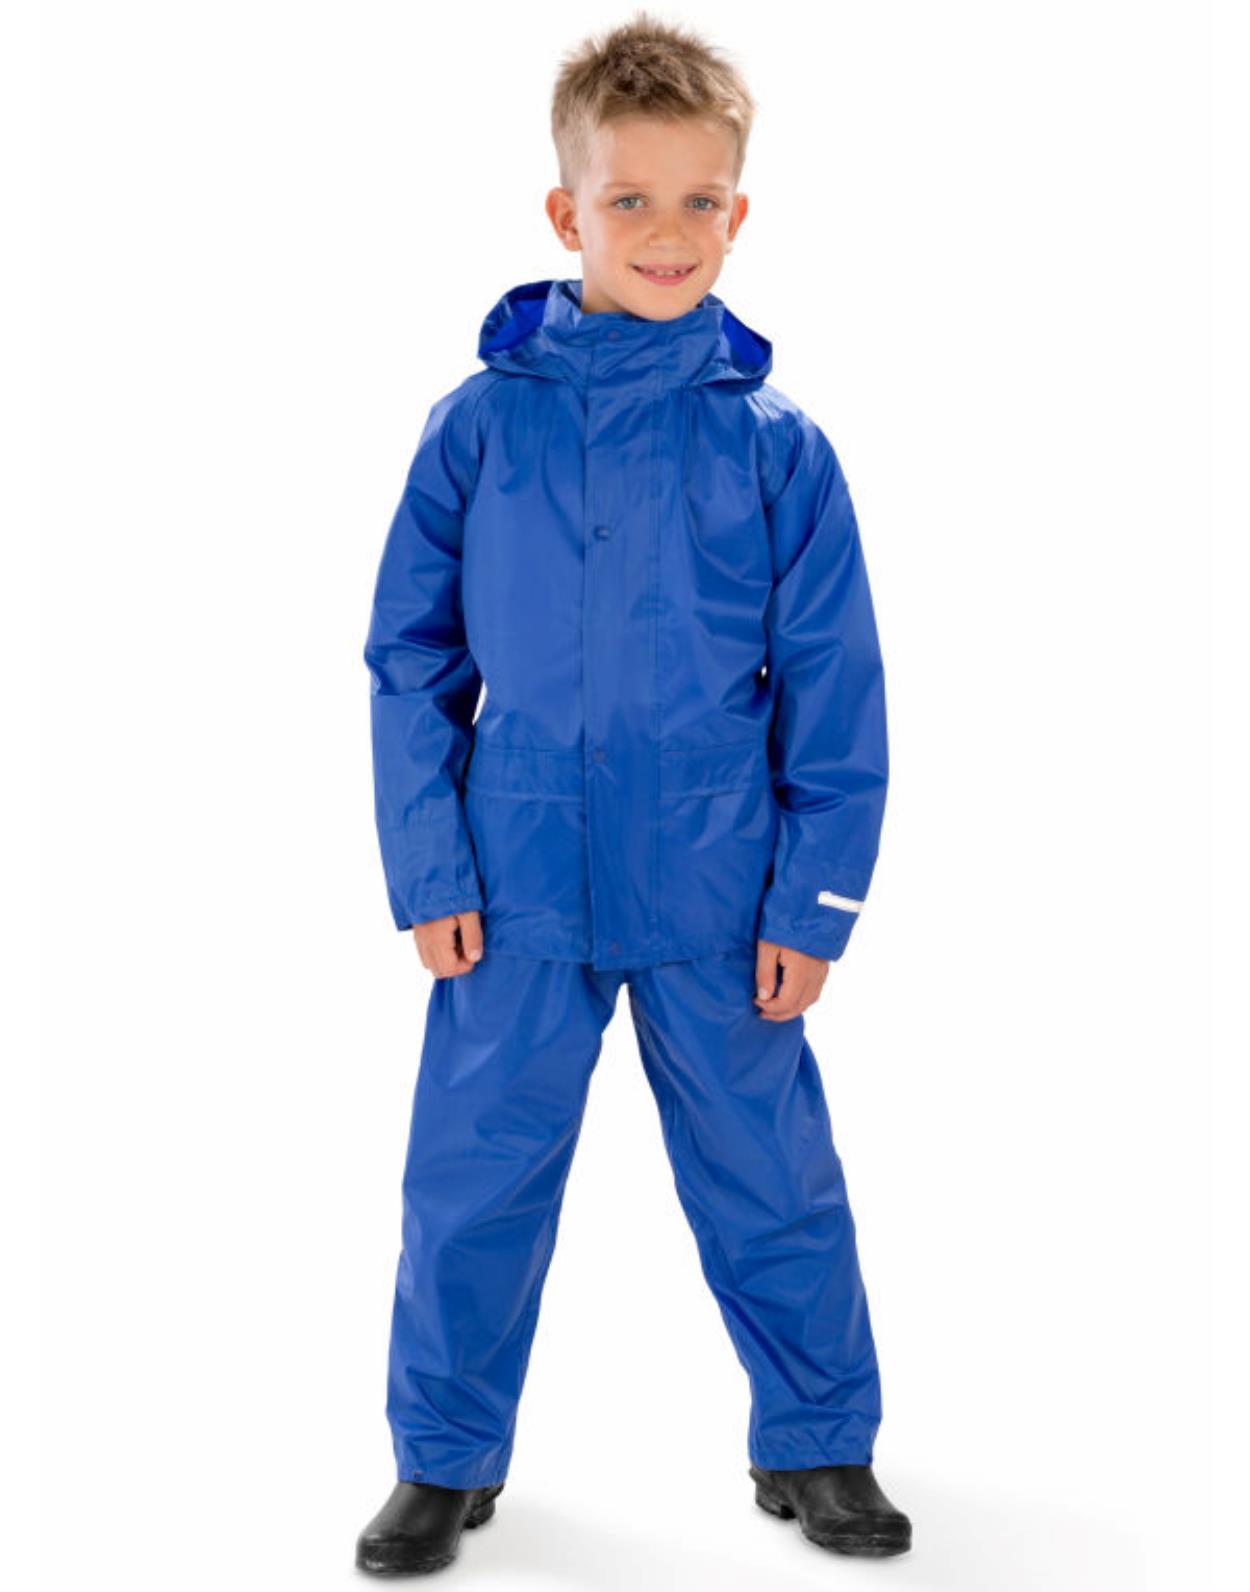 R225B Kids Core Rain Suit secondary Image